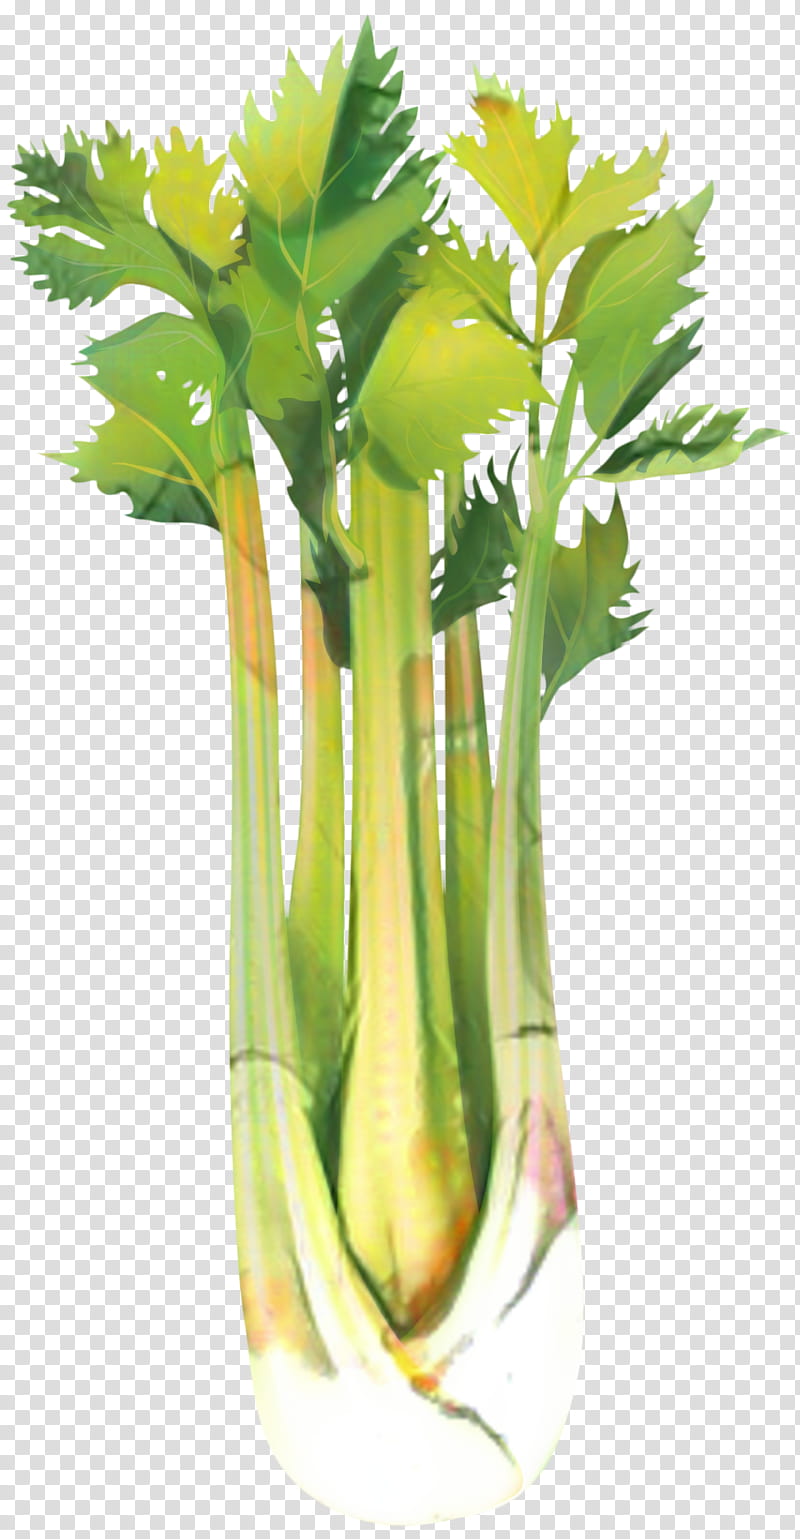 Flower, Celeriac, Vegetable, Food, Leaf Celery, Greens, Plant, Plant Stem transparent background PNG clipart